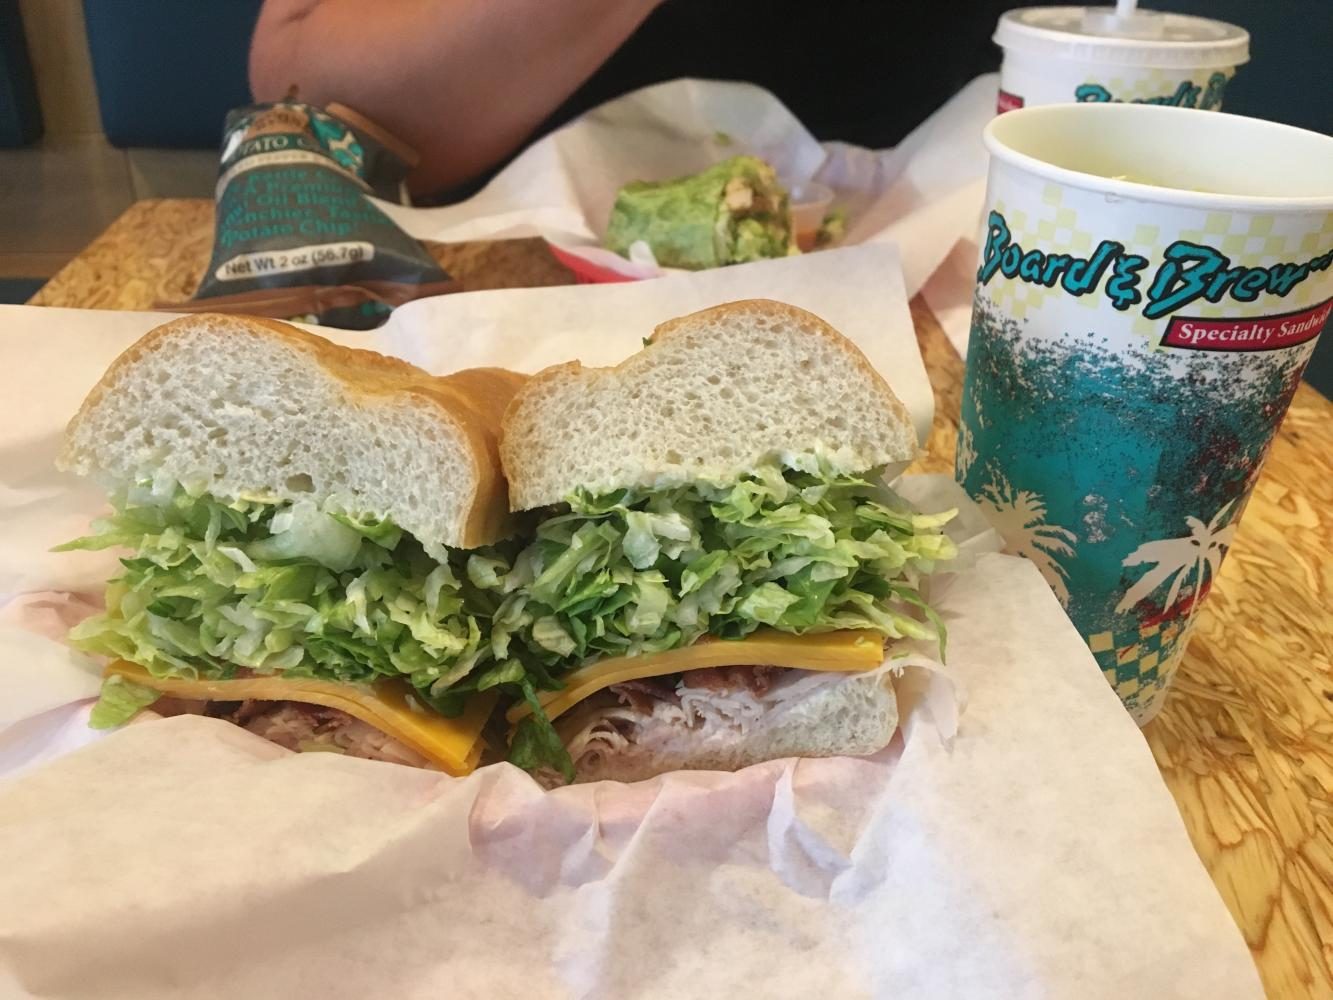 Board & Brews Turkey Club sandwich. 